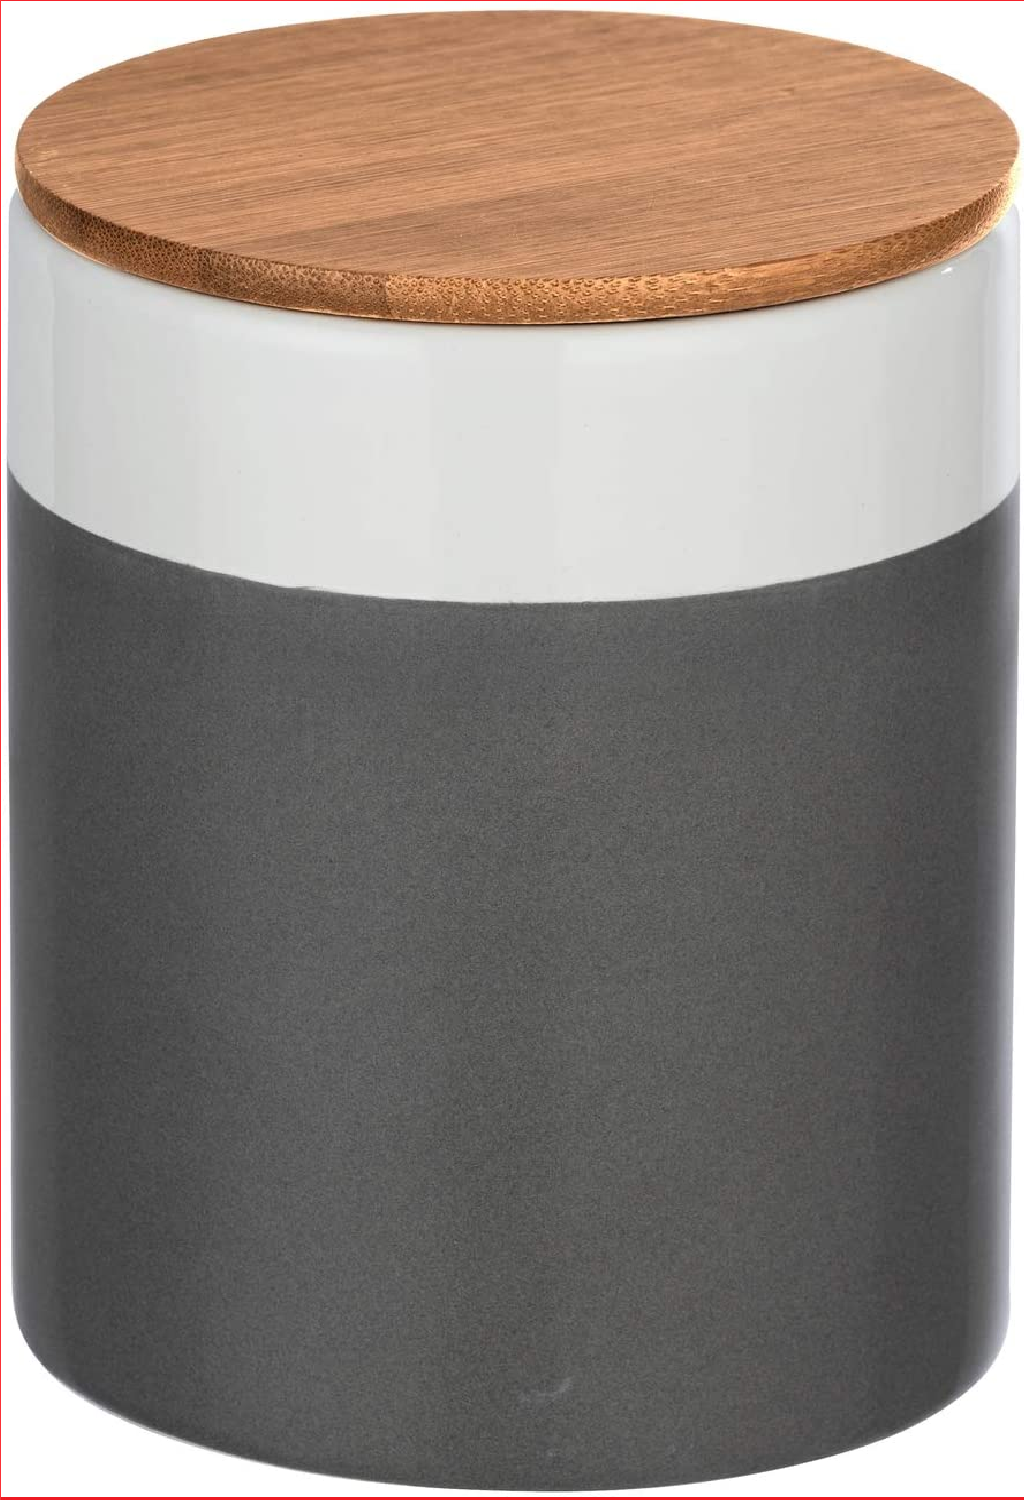 Aufbewahrungsdose Malta, 0,95 l, Vorratshaltung, Frischhaltedose mit Bambusdeckel und Silikonring zur luftdichten & aromafrischen Aufbewahrung, aus hochwertiger Keramik, Ø 11 x 15 cm, Mehrfarbig